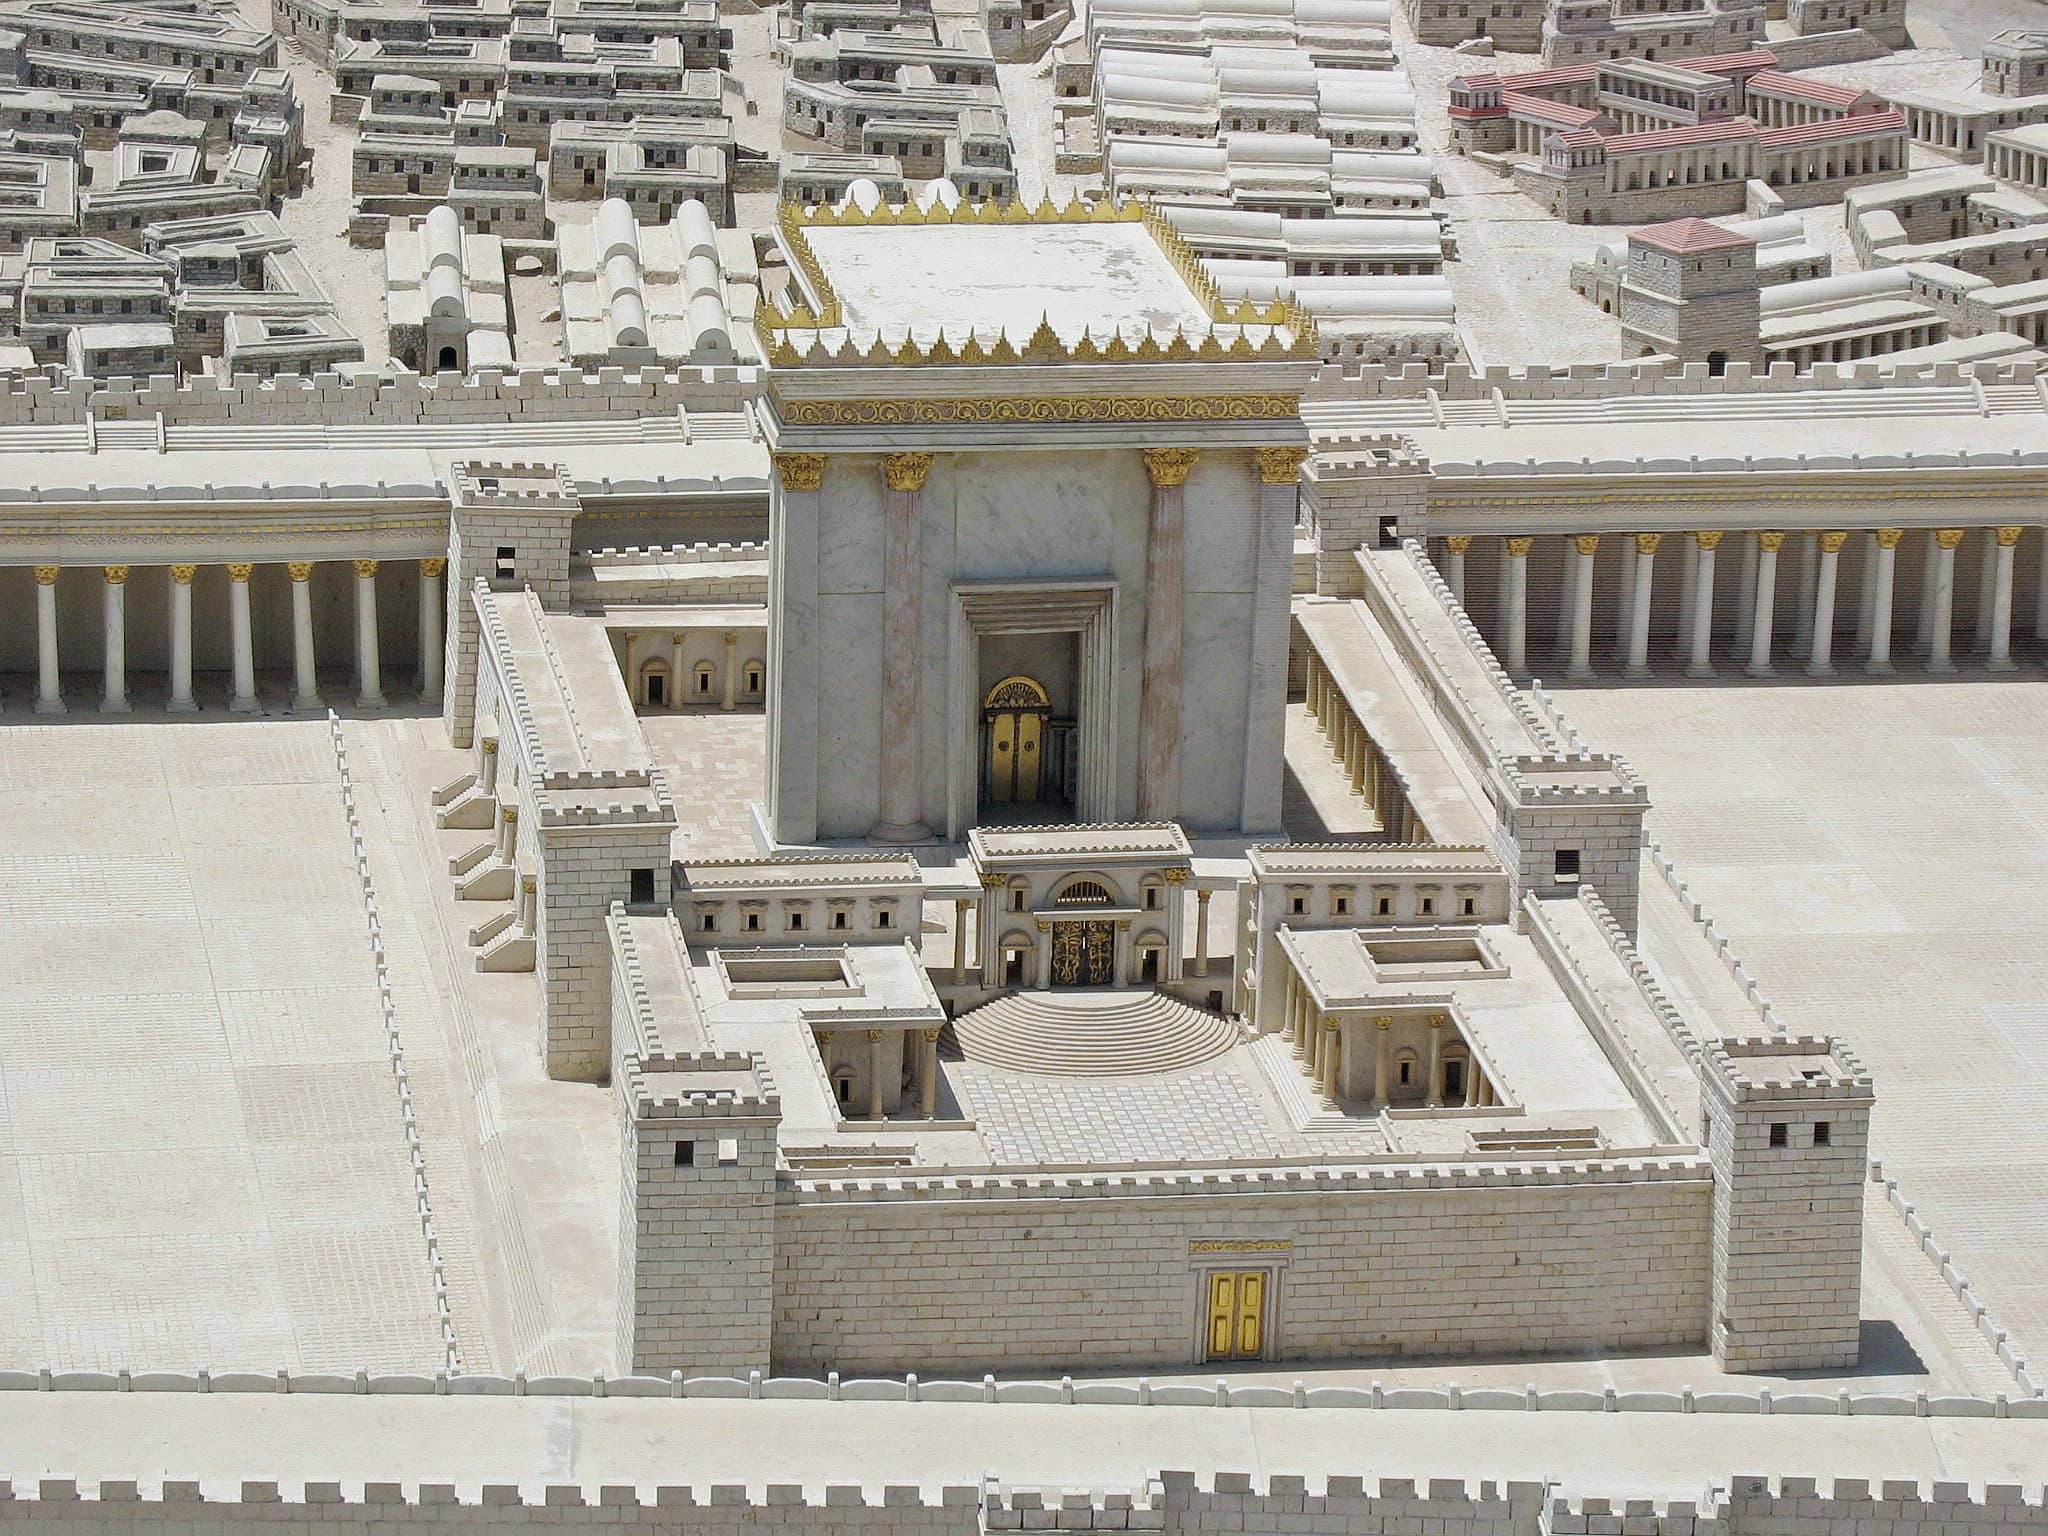 דגם של בית המקדש השני מוצג במוזיאון ישראל (צילום: Ariely, ויקיפדיה)